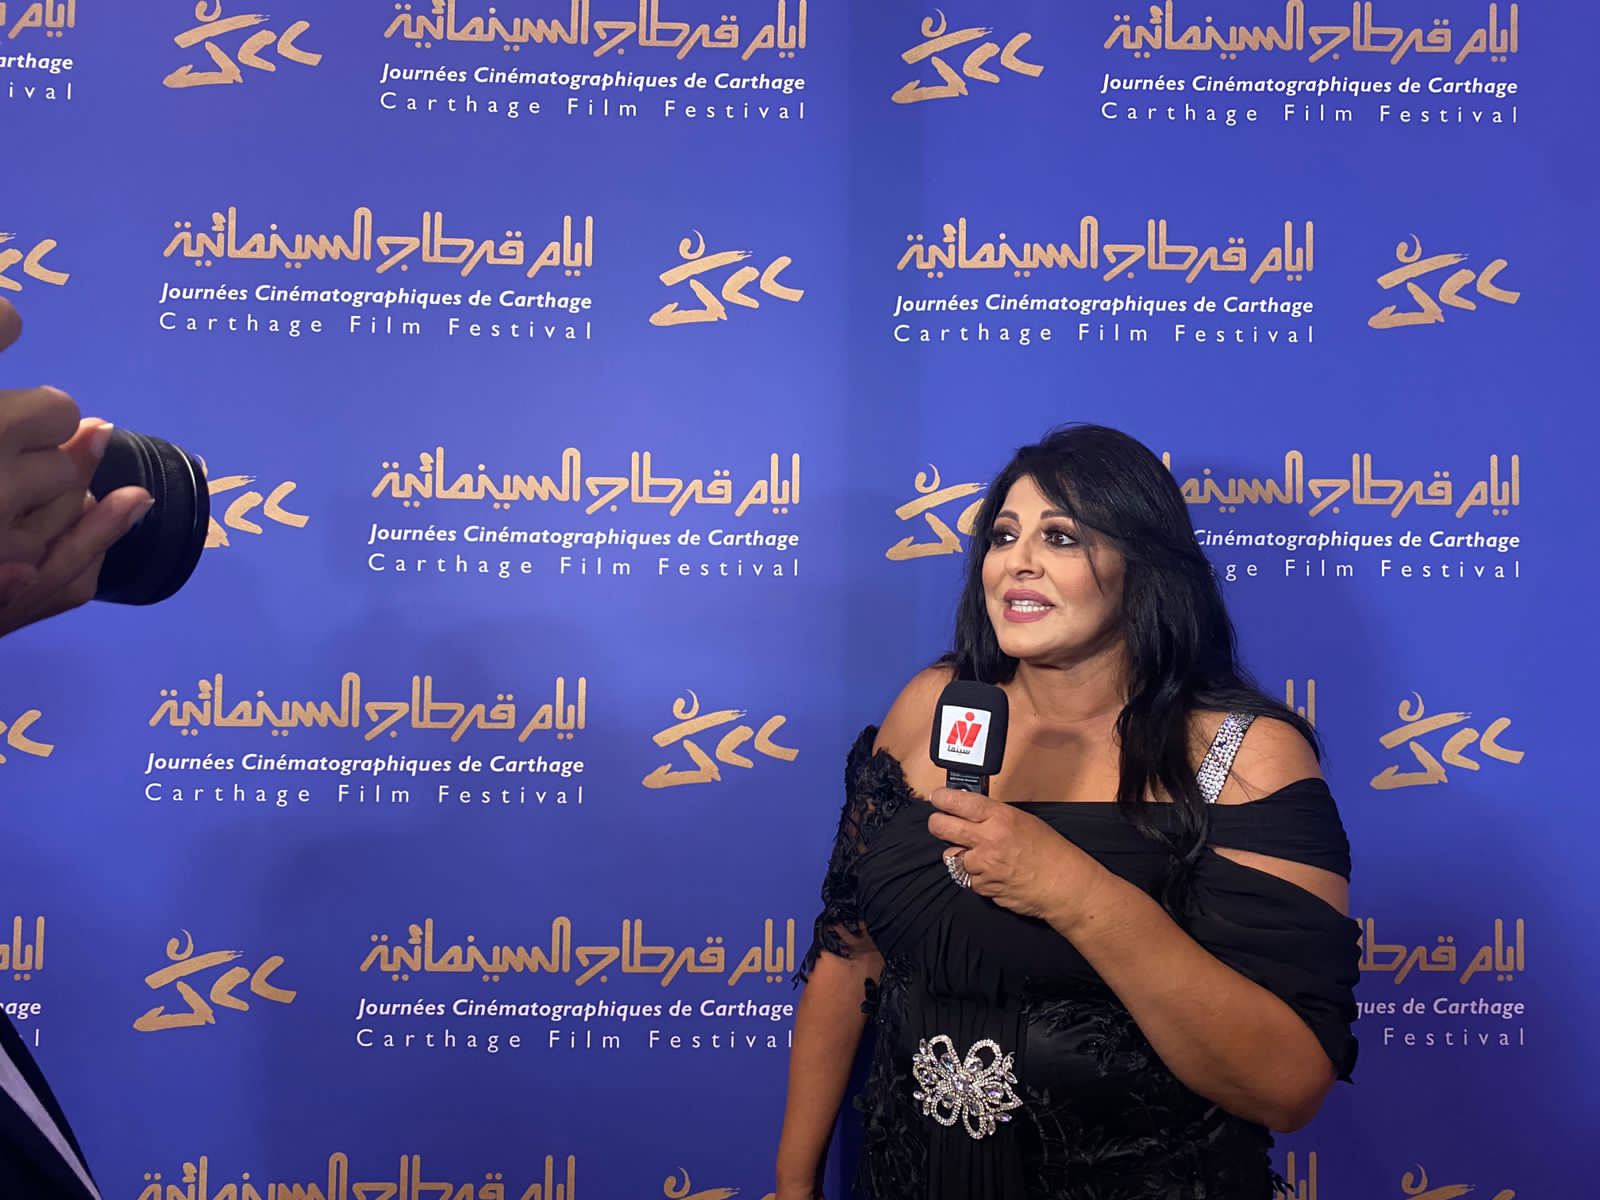 سنياء الشمامخي مديرة أيام قرطاج  الدورة الجديدة تأكيد علي الالتزام بسينما القيم والفكر الحر (3)